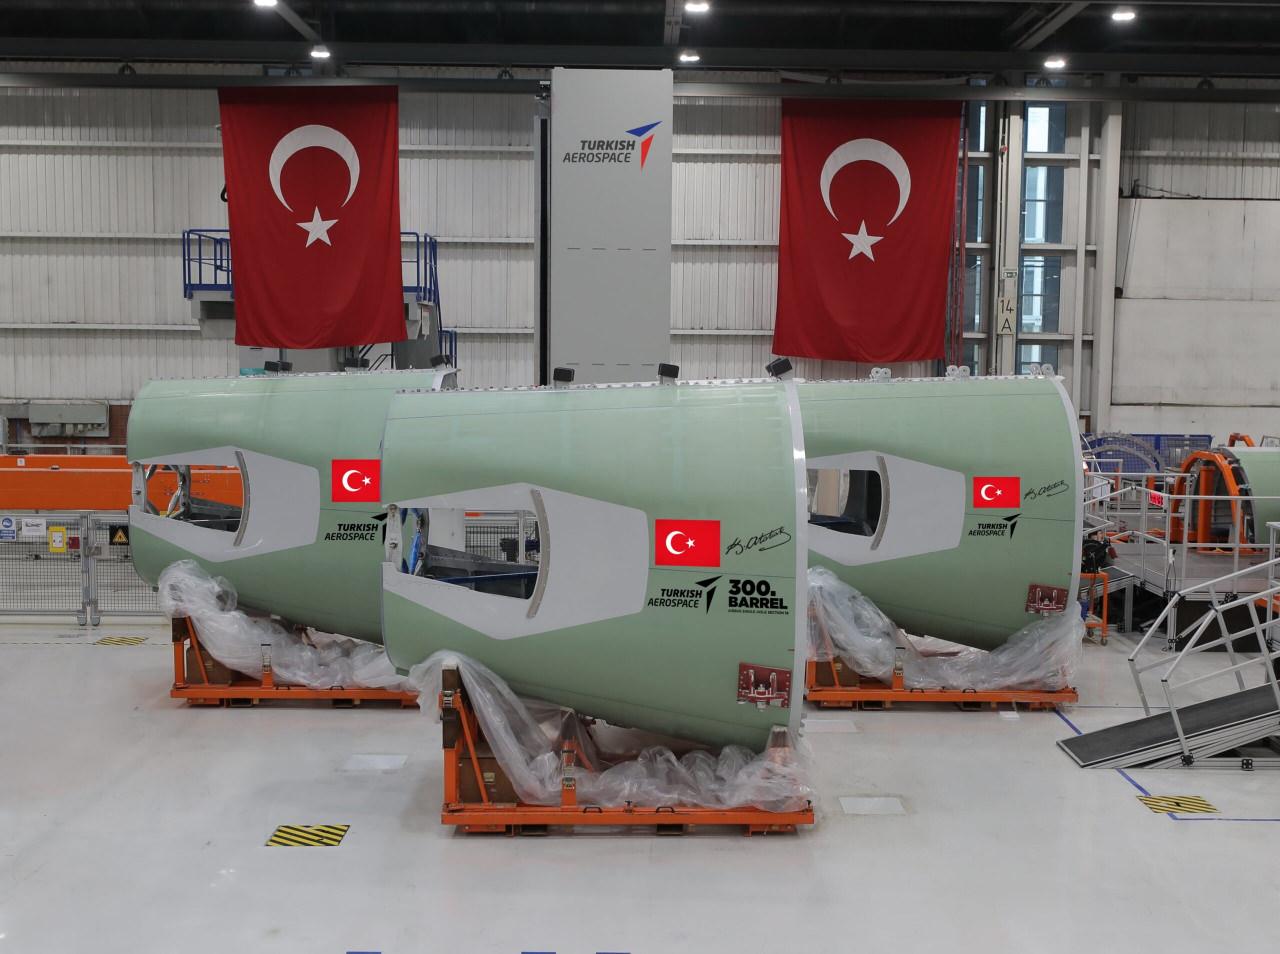 Malezya'dan Türk havacılık sektörüne göğüs kabartan ilgi! Tarih vererek açıkladılar